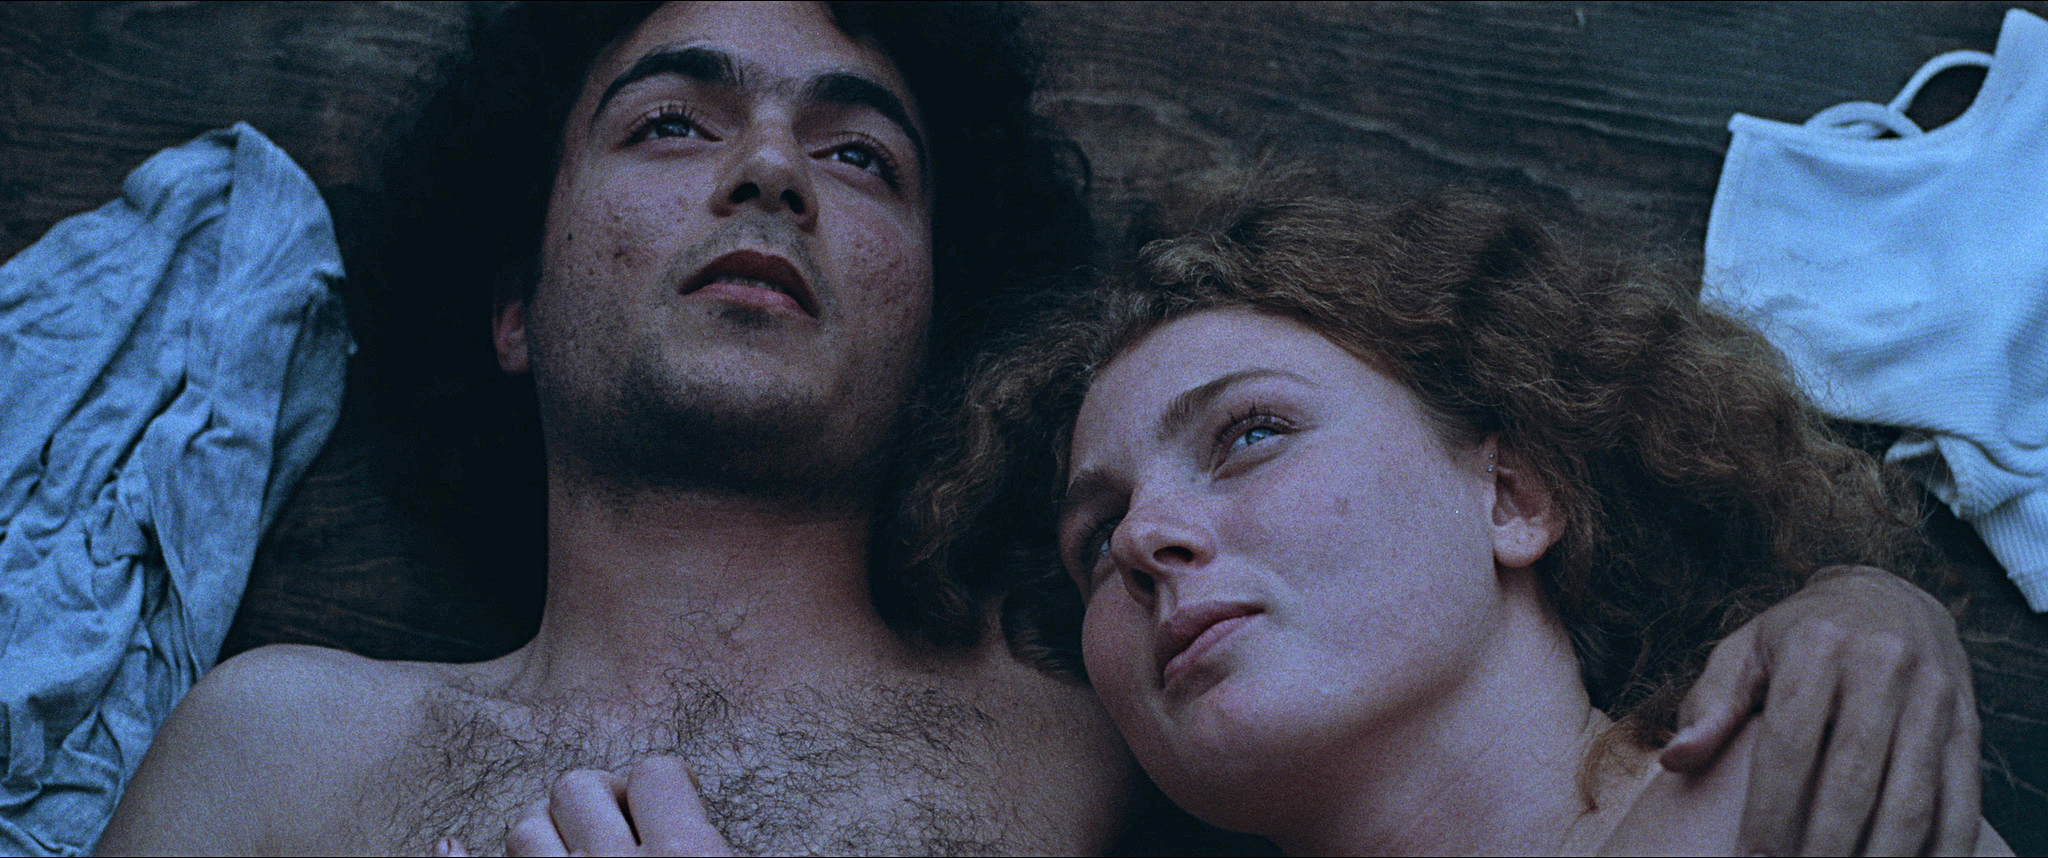 Markus Castros film Ghabe handlar inte bara om vardagsrasism, utan är också en passionerad kärlekshistoria.  